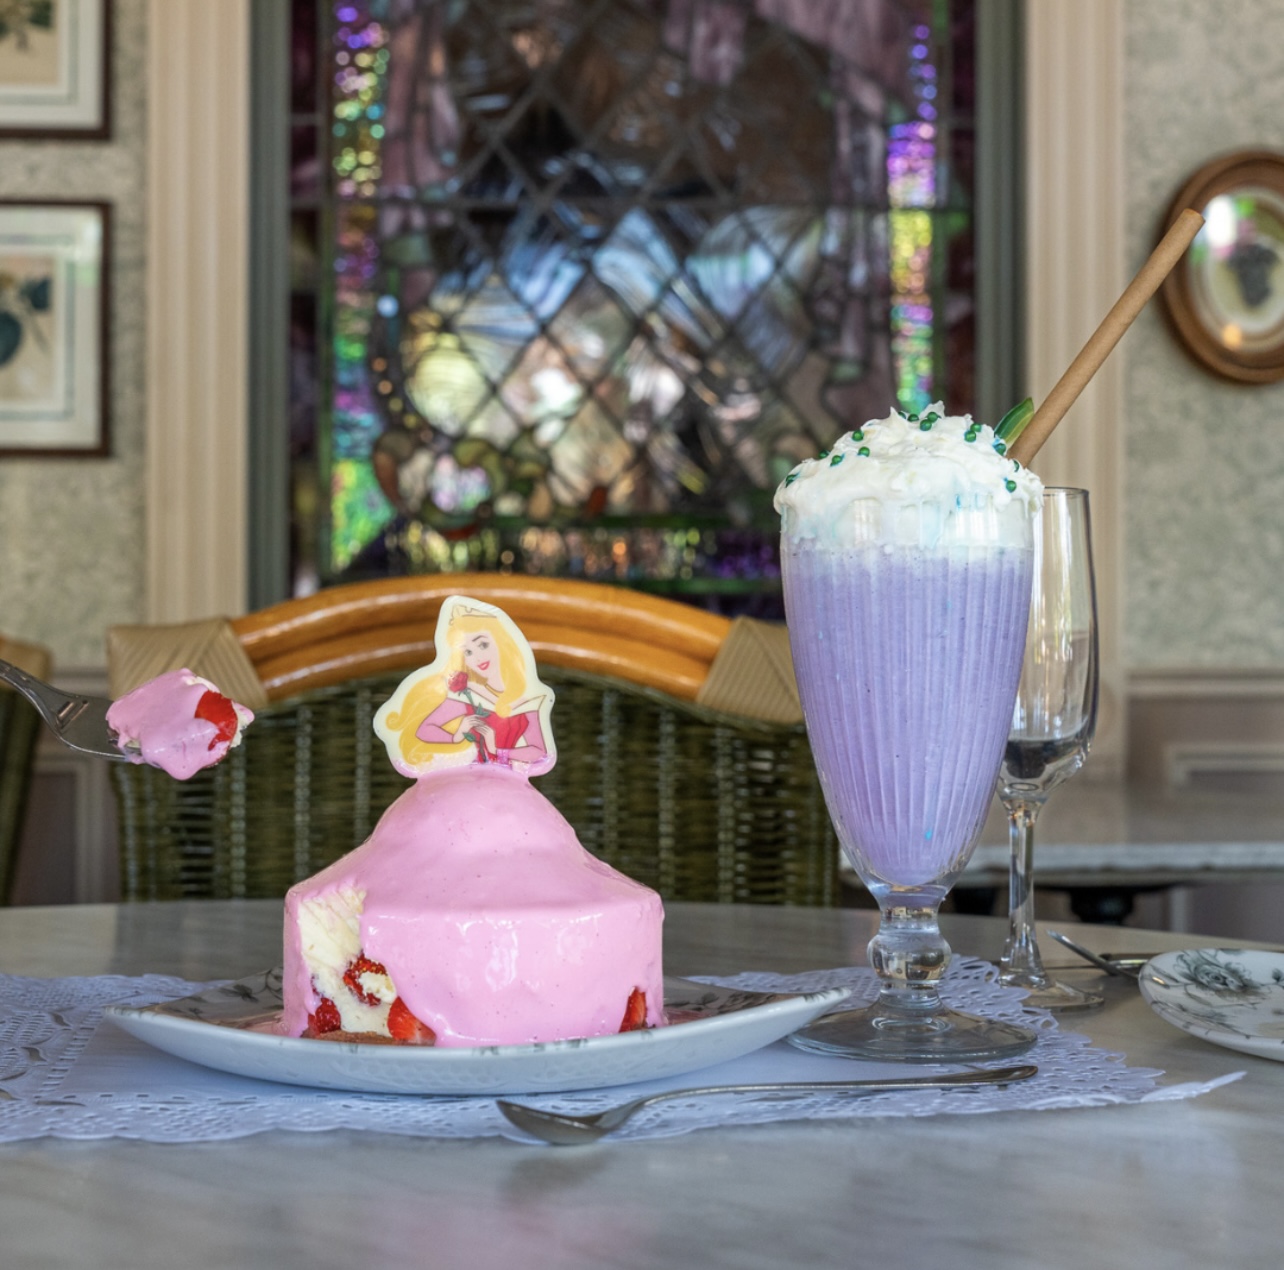 Disneyland Paris World Princess Week Treats and Snacks released!